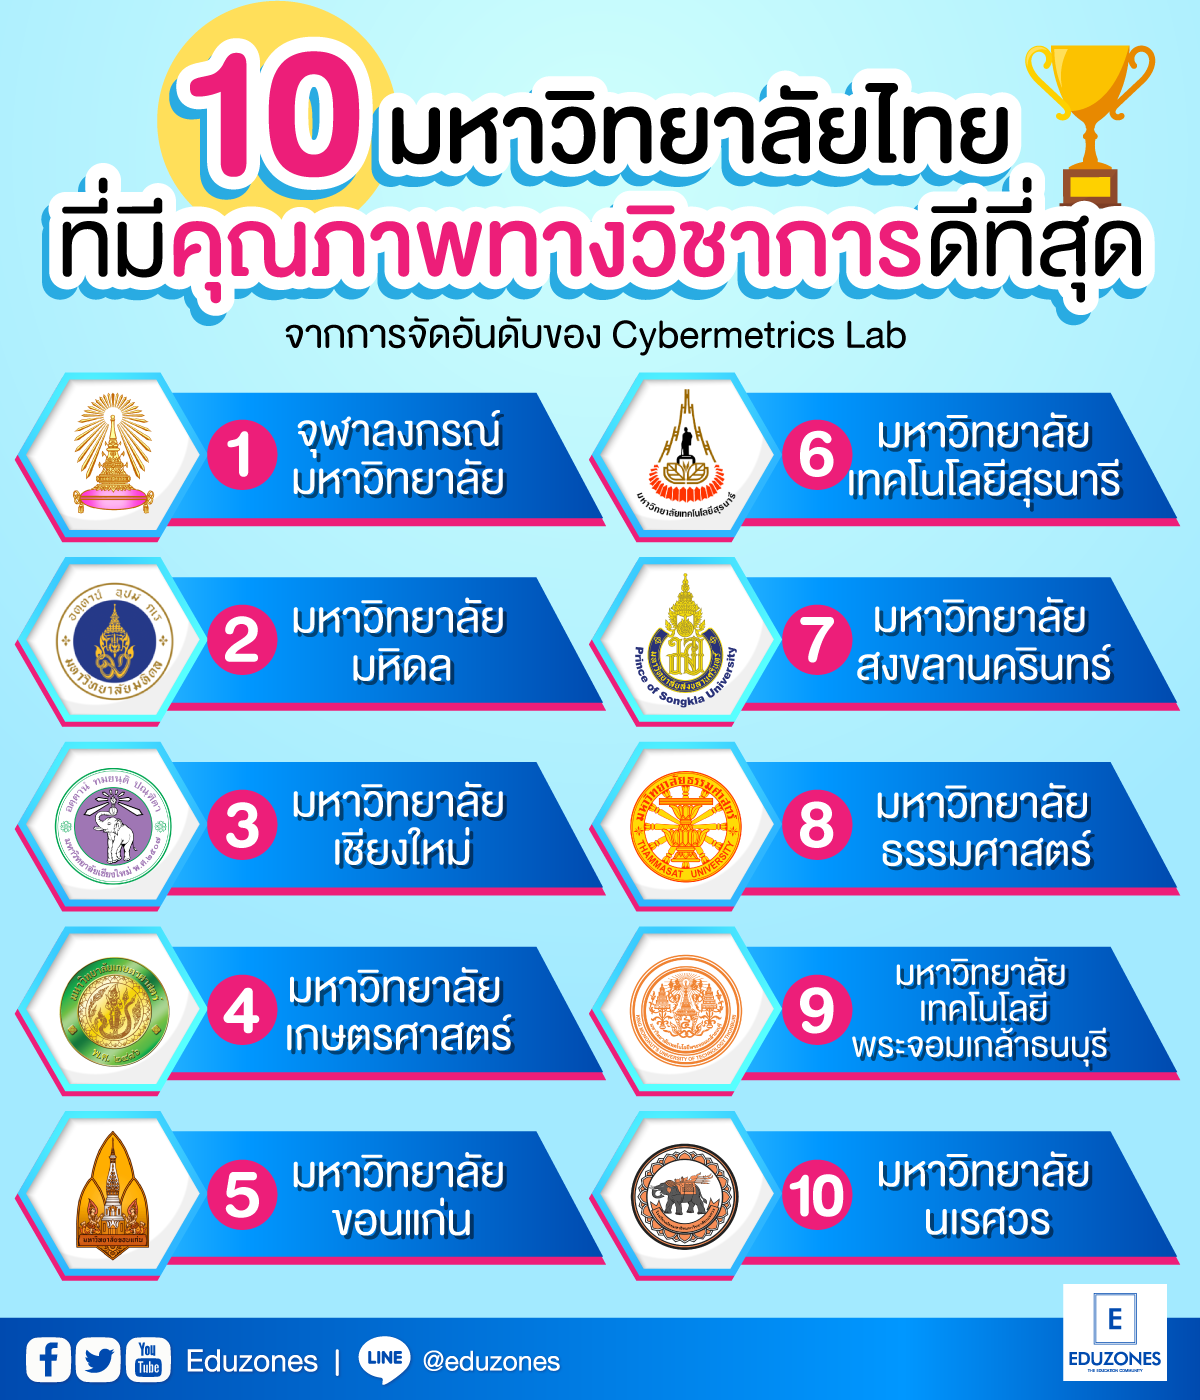 10 มหาวิทยาลัยไทยที่มีคุณภาพทางวิชาการดีที่สุด